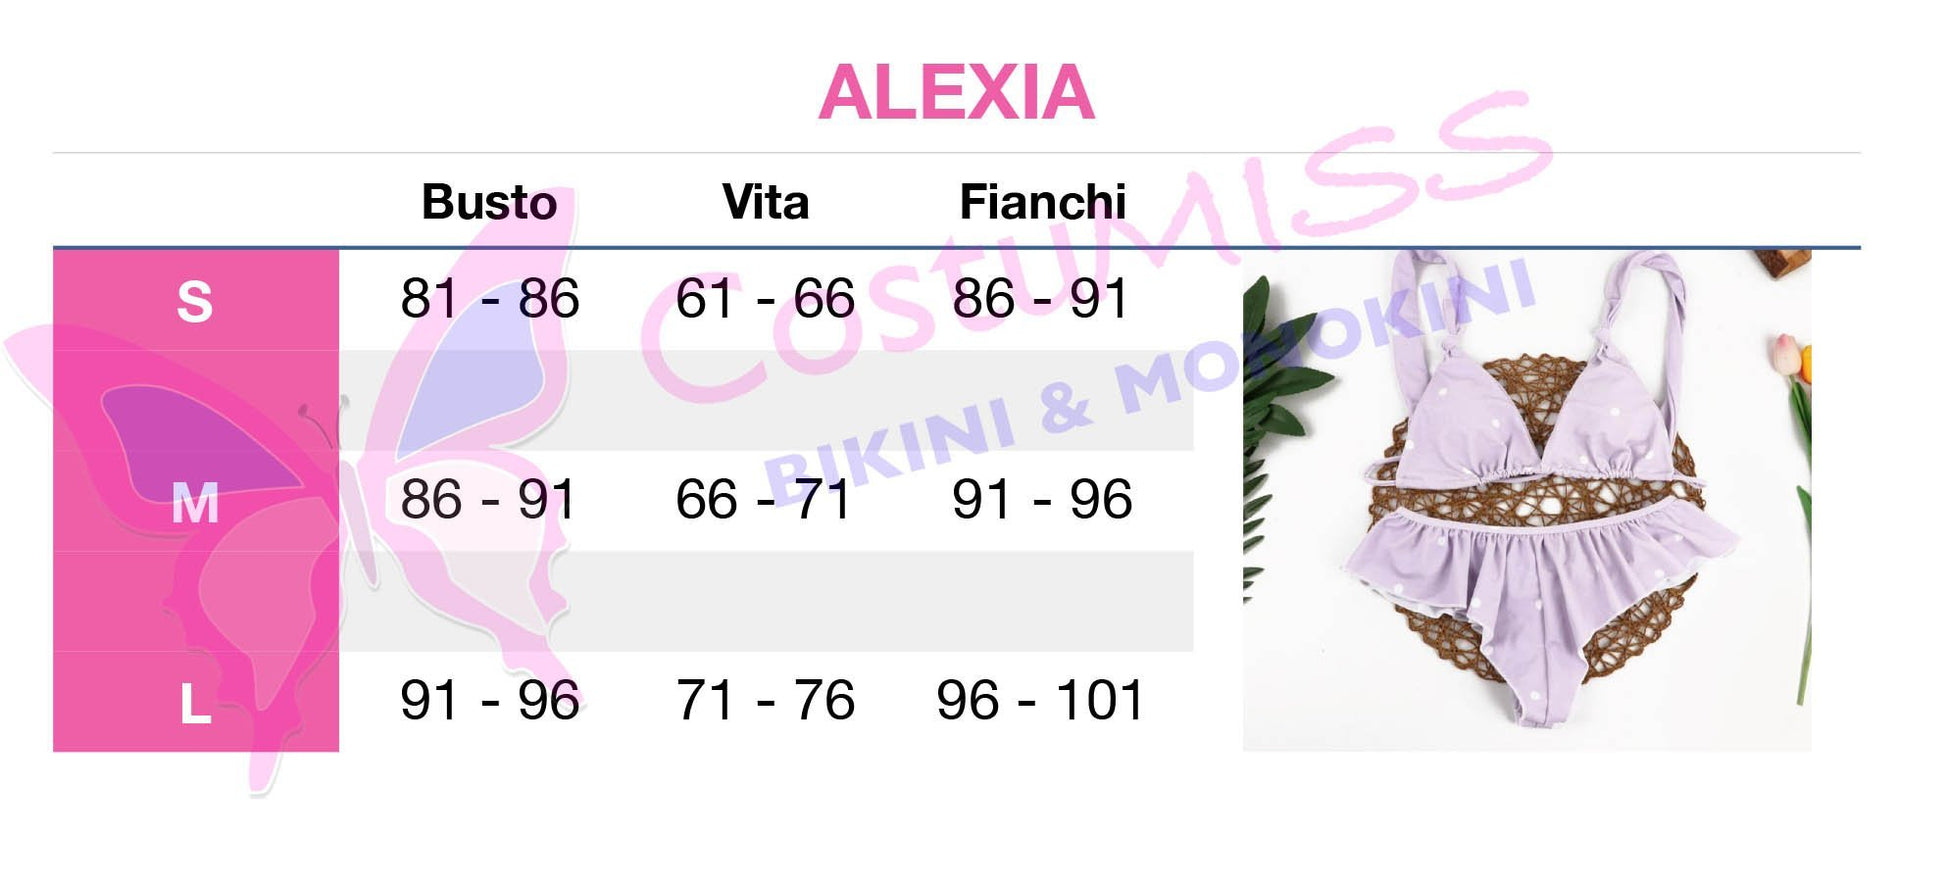 alexia lilla - Costumiss